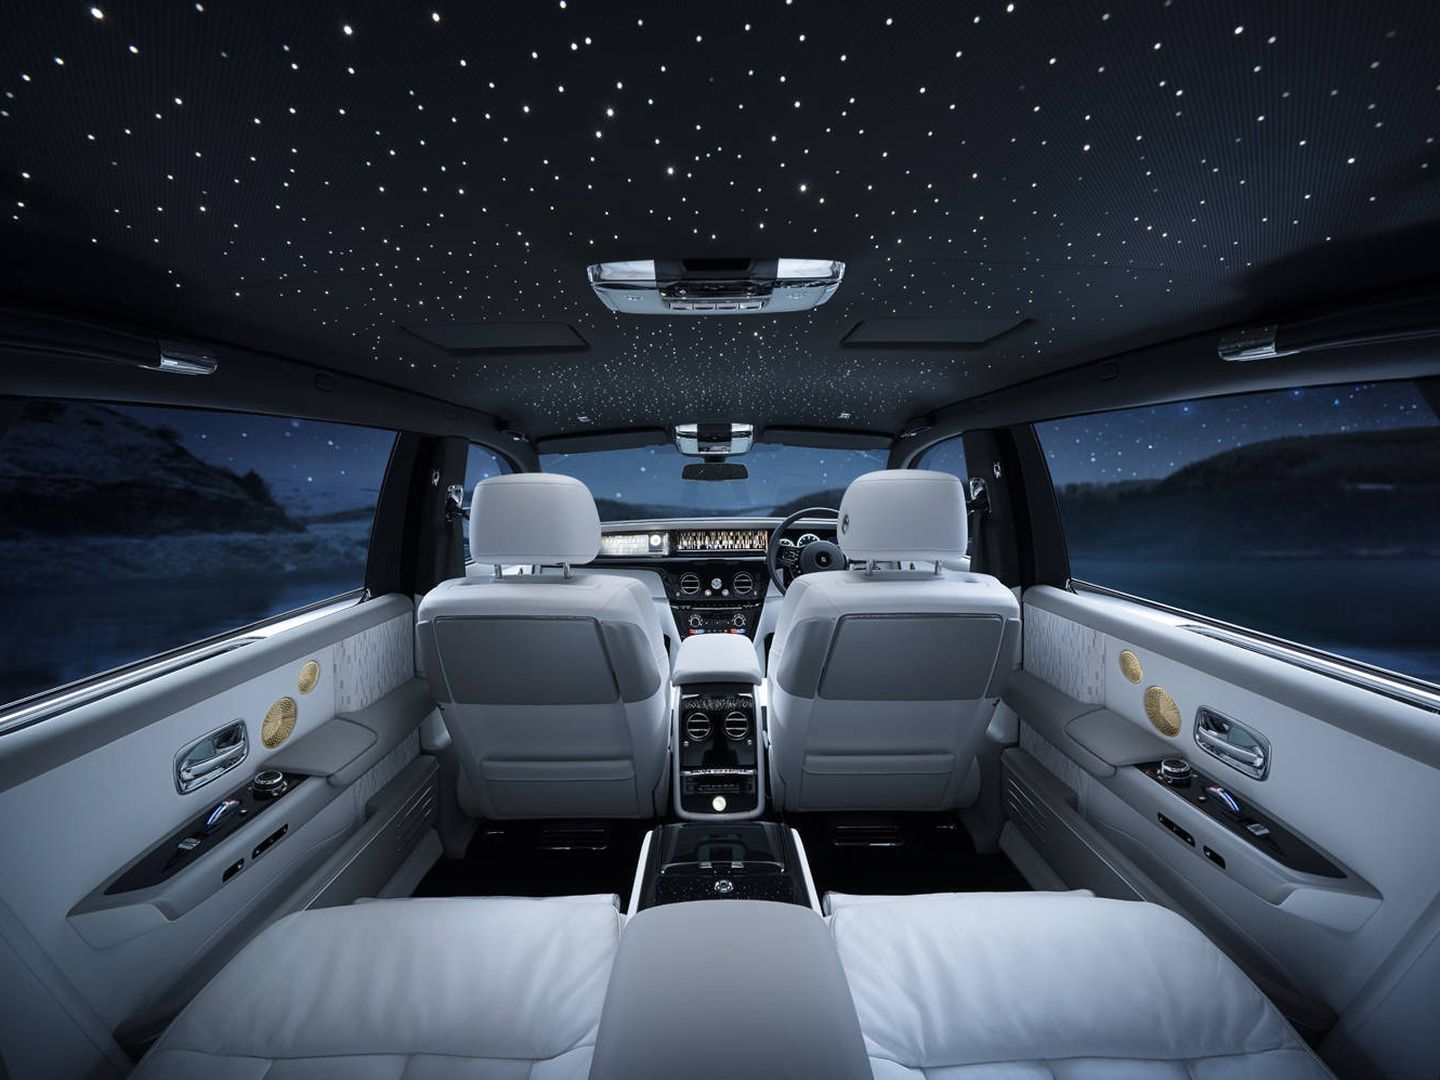 Todo en el interior del Phantom Tranquillity recuerda al espacio (Foto: Rolls-Royce)